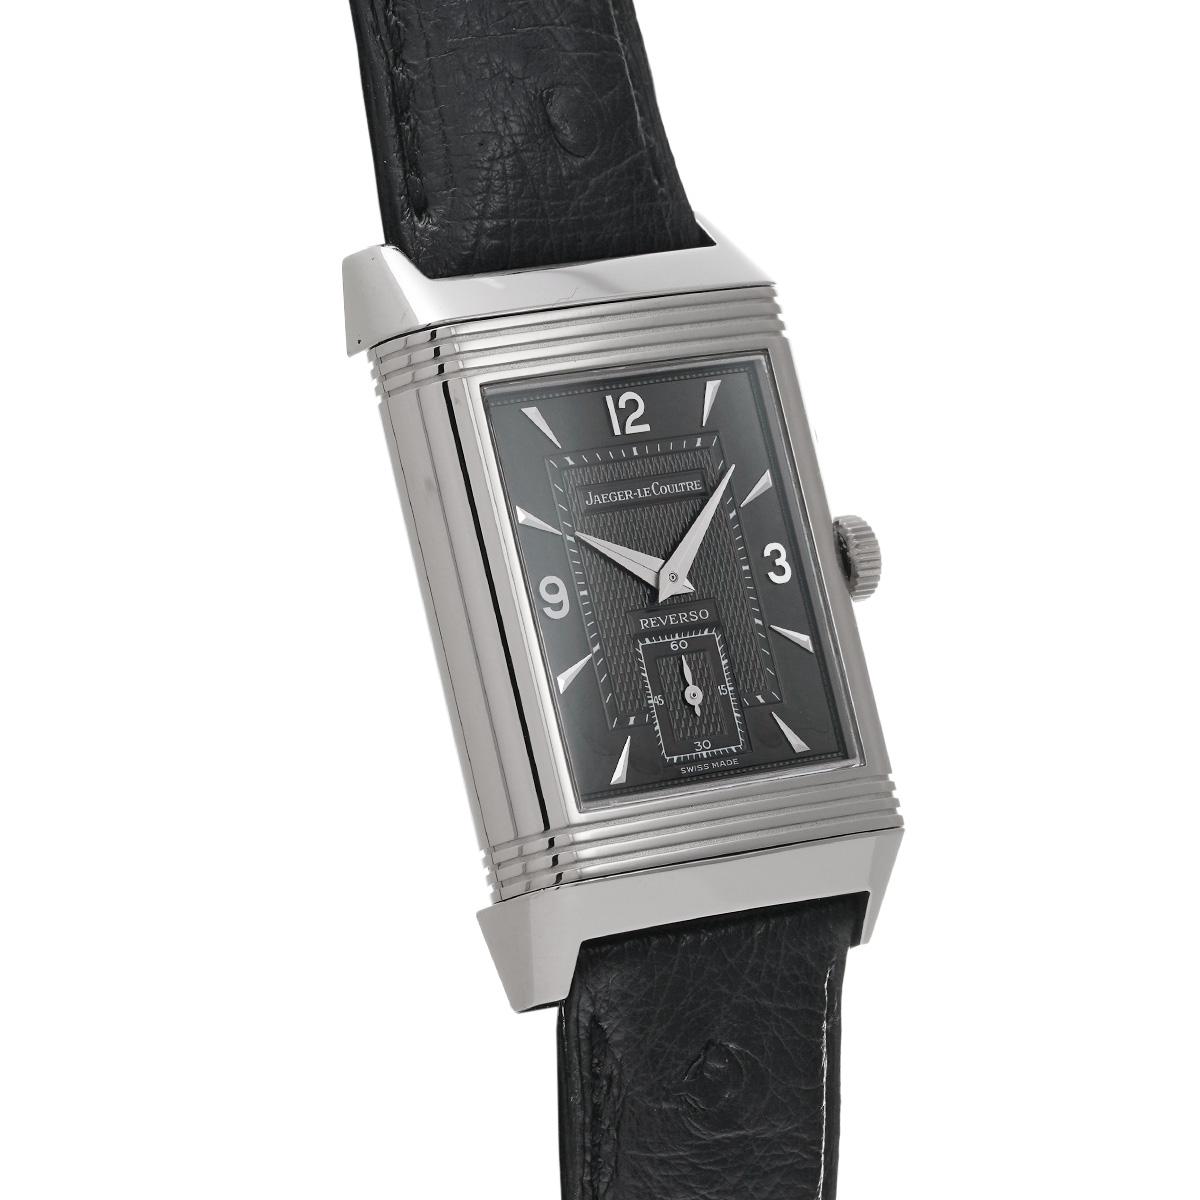 レベルソ デュオ Ref.270.8.54 品 メンズ 腕時計